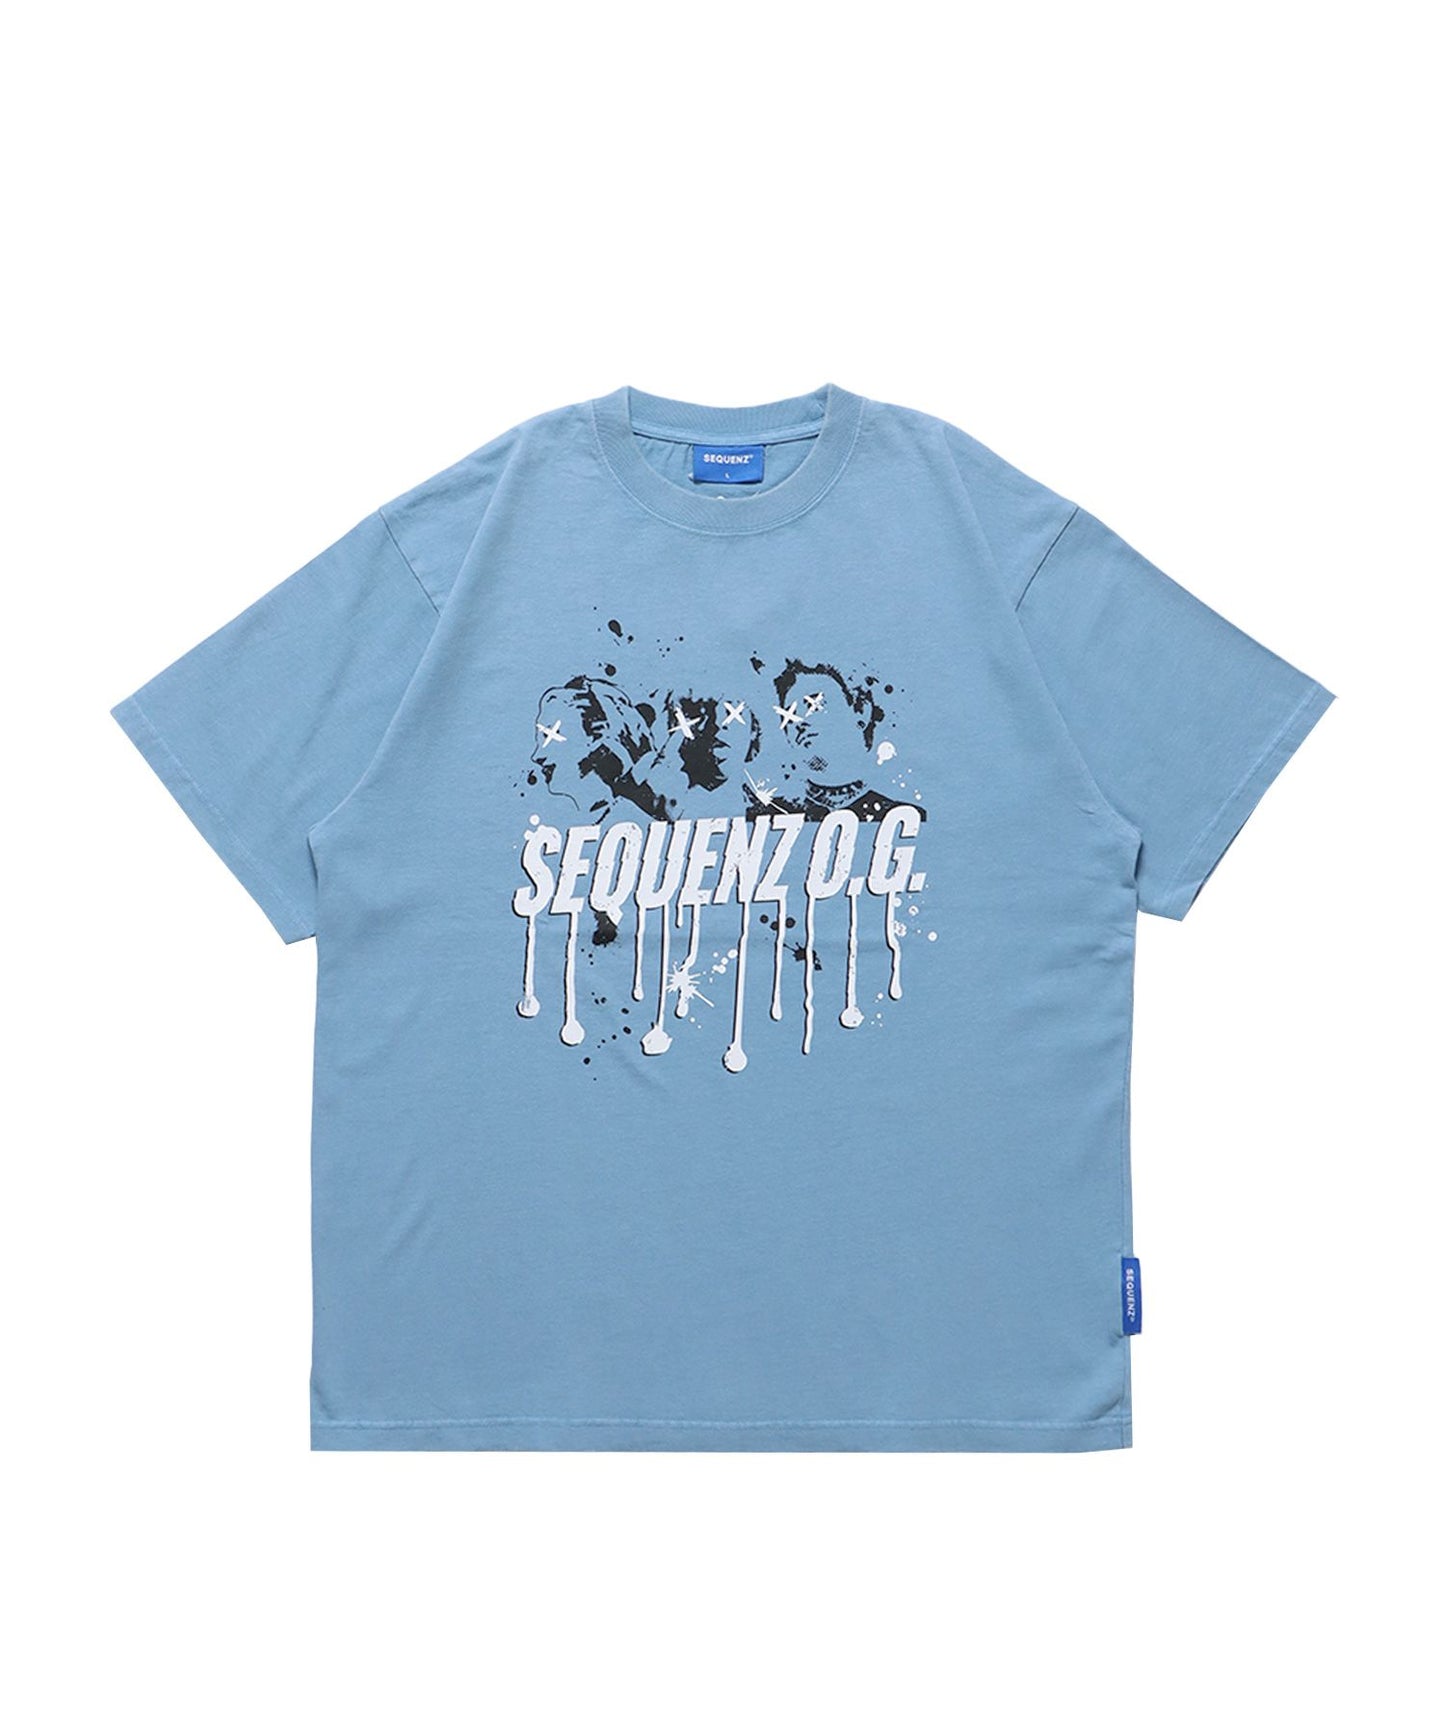 【SEQUENZ】TOUR FADE S/S TEE / 半袖Tシャツ クルーネック ブランドロゴ ツアーT バックプリント ハードバイオ スカイブルー